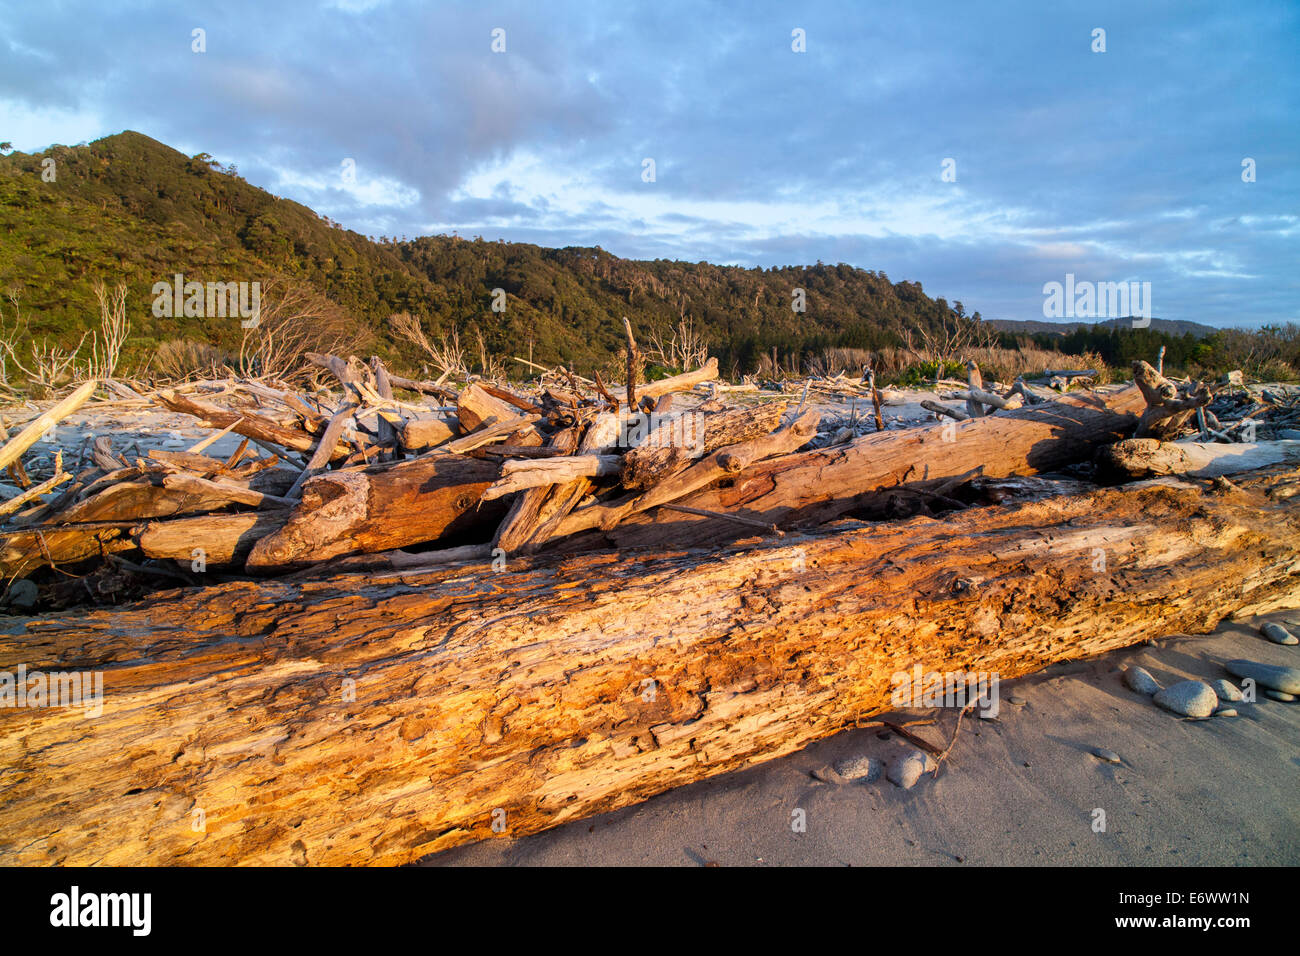 Bois flotté sur la plage, côte ouest, île du Sud, Nouvelle-Zélande Banque D'Images